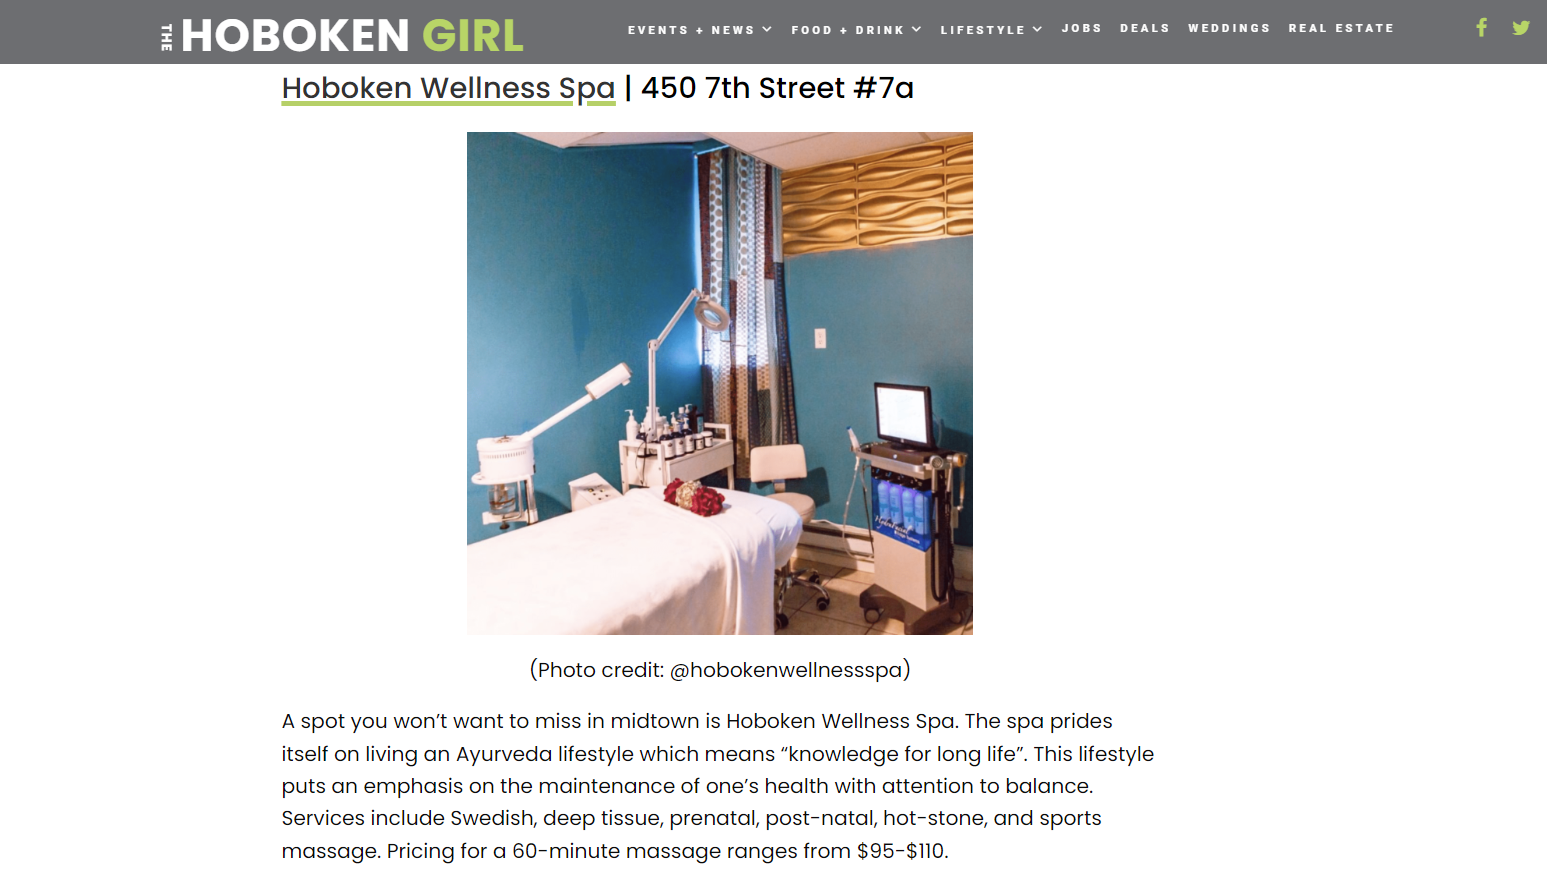 HOBOKEN WELLNESS SPA Featured in The Hoboken Girl website